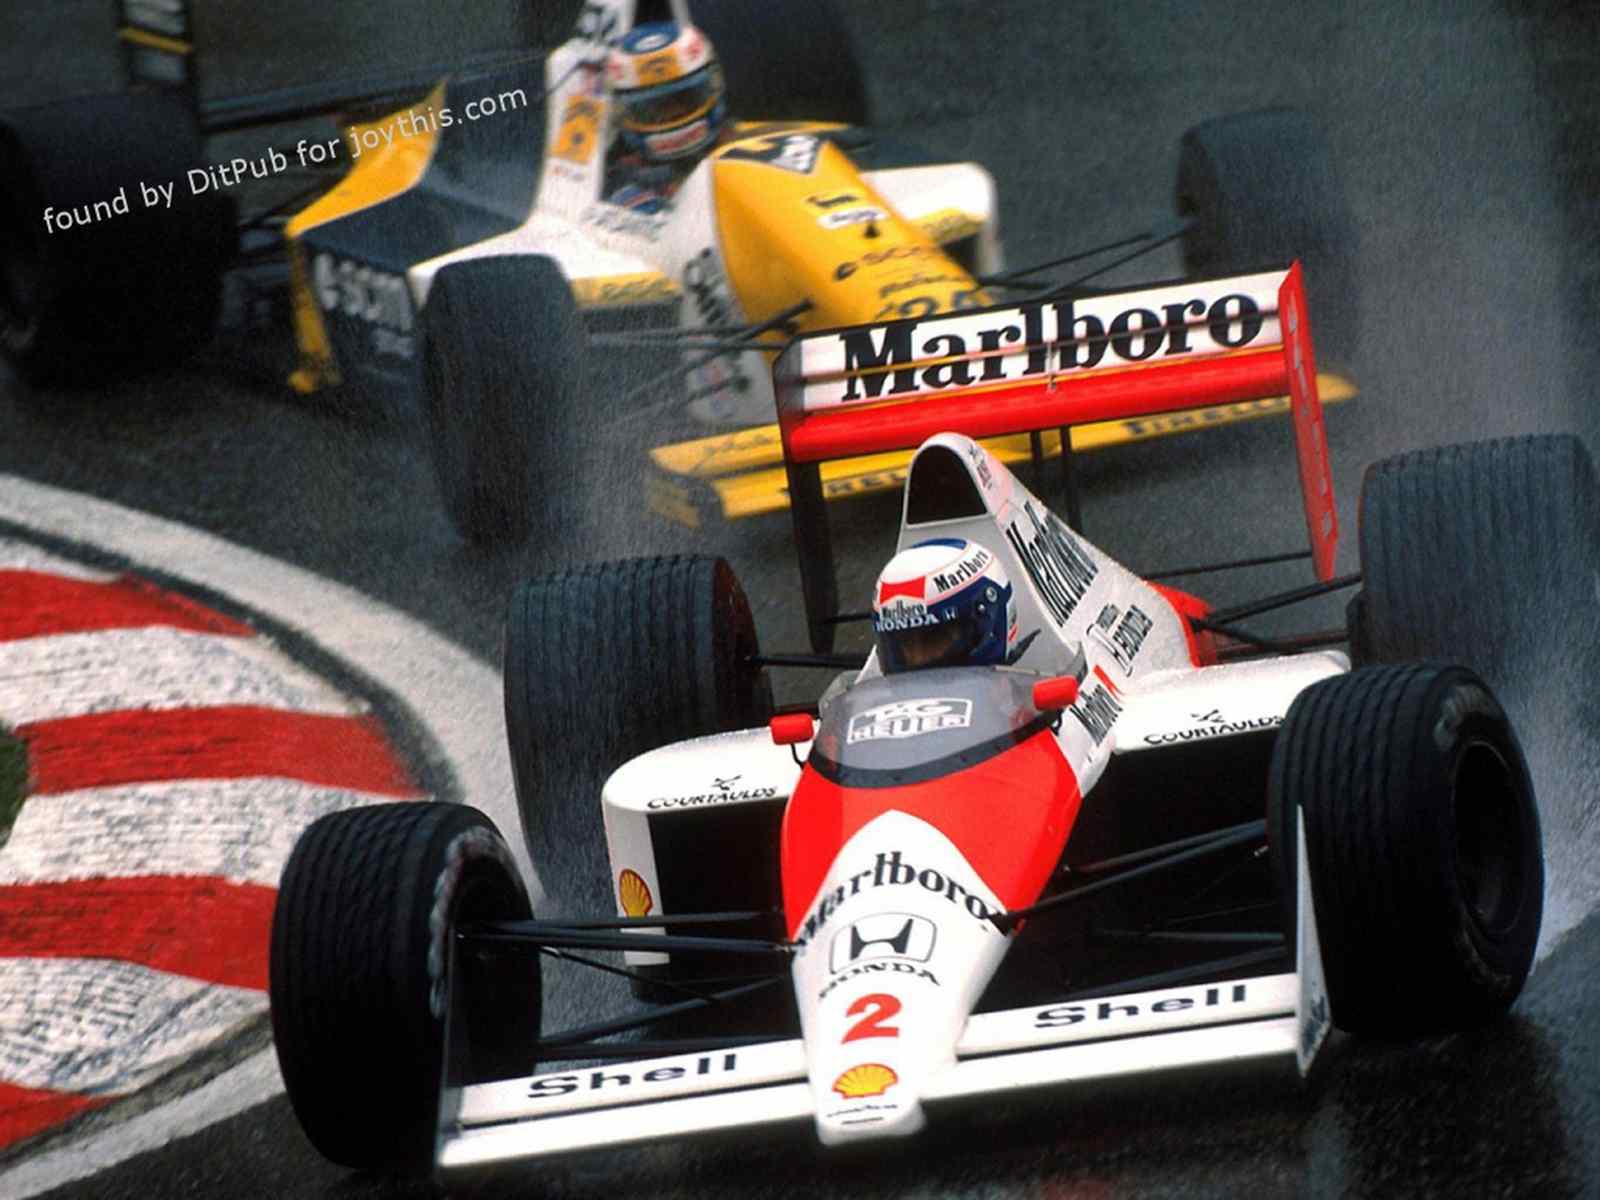 Prost saiu com o tricampeonato em 1989. O momento marcante do campeonato foi a batida com o rival Senna no Japão